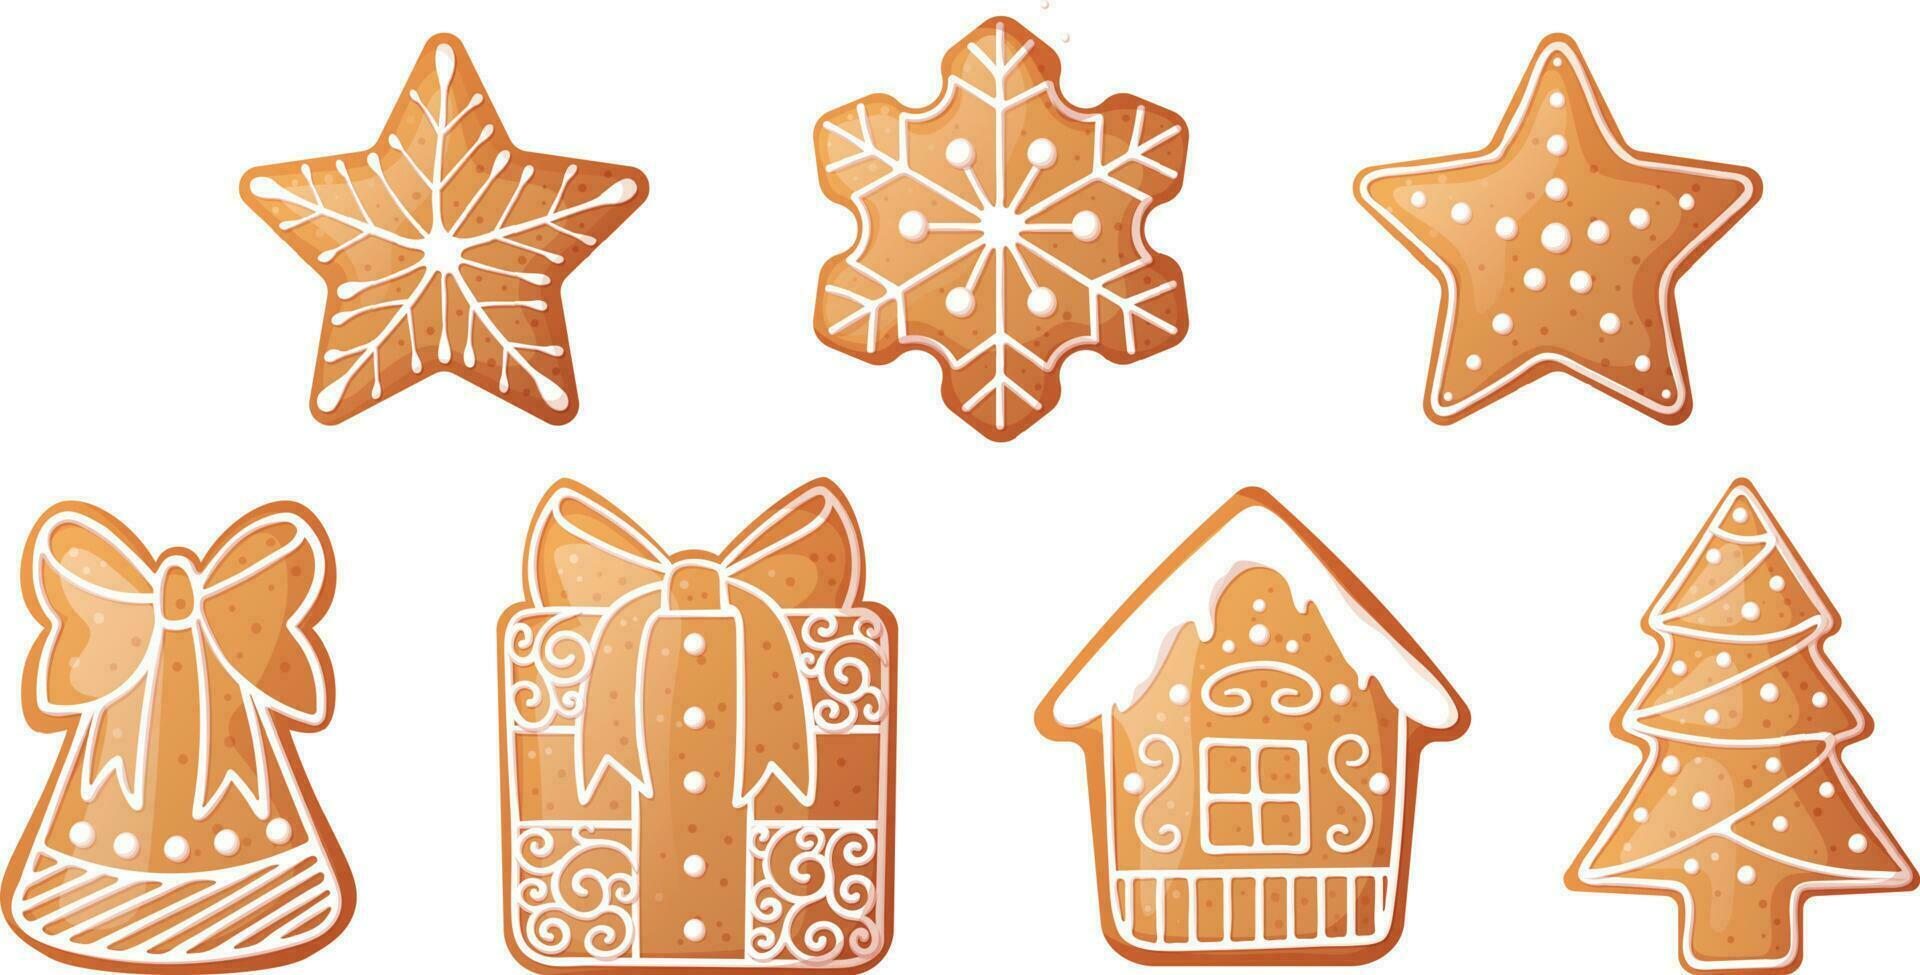 Weihnachten Lebkuchen einstellen Schneeflocken, Haus, Geschenk, Glocke, Weihnachten Baum. Vektor Illustration von Urlaub Kekse